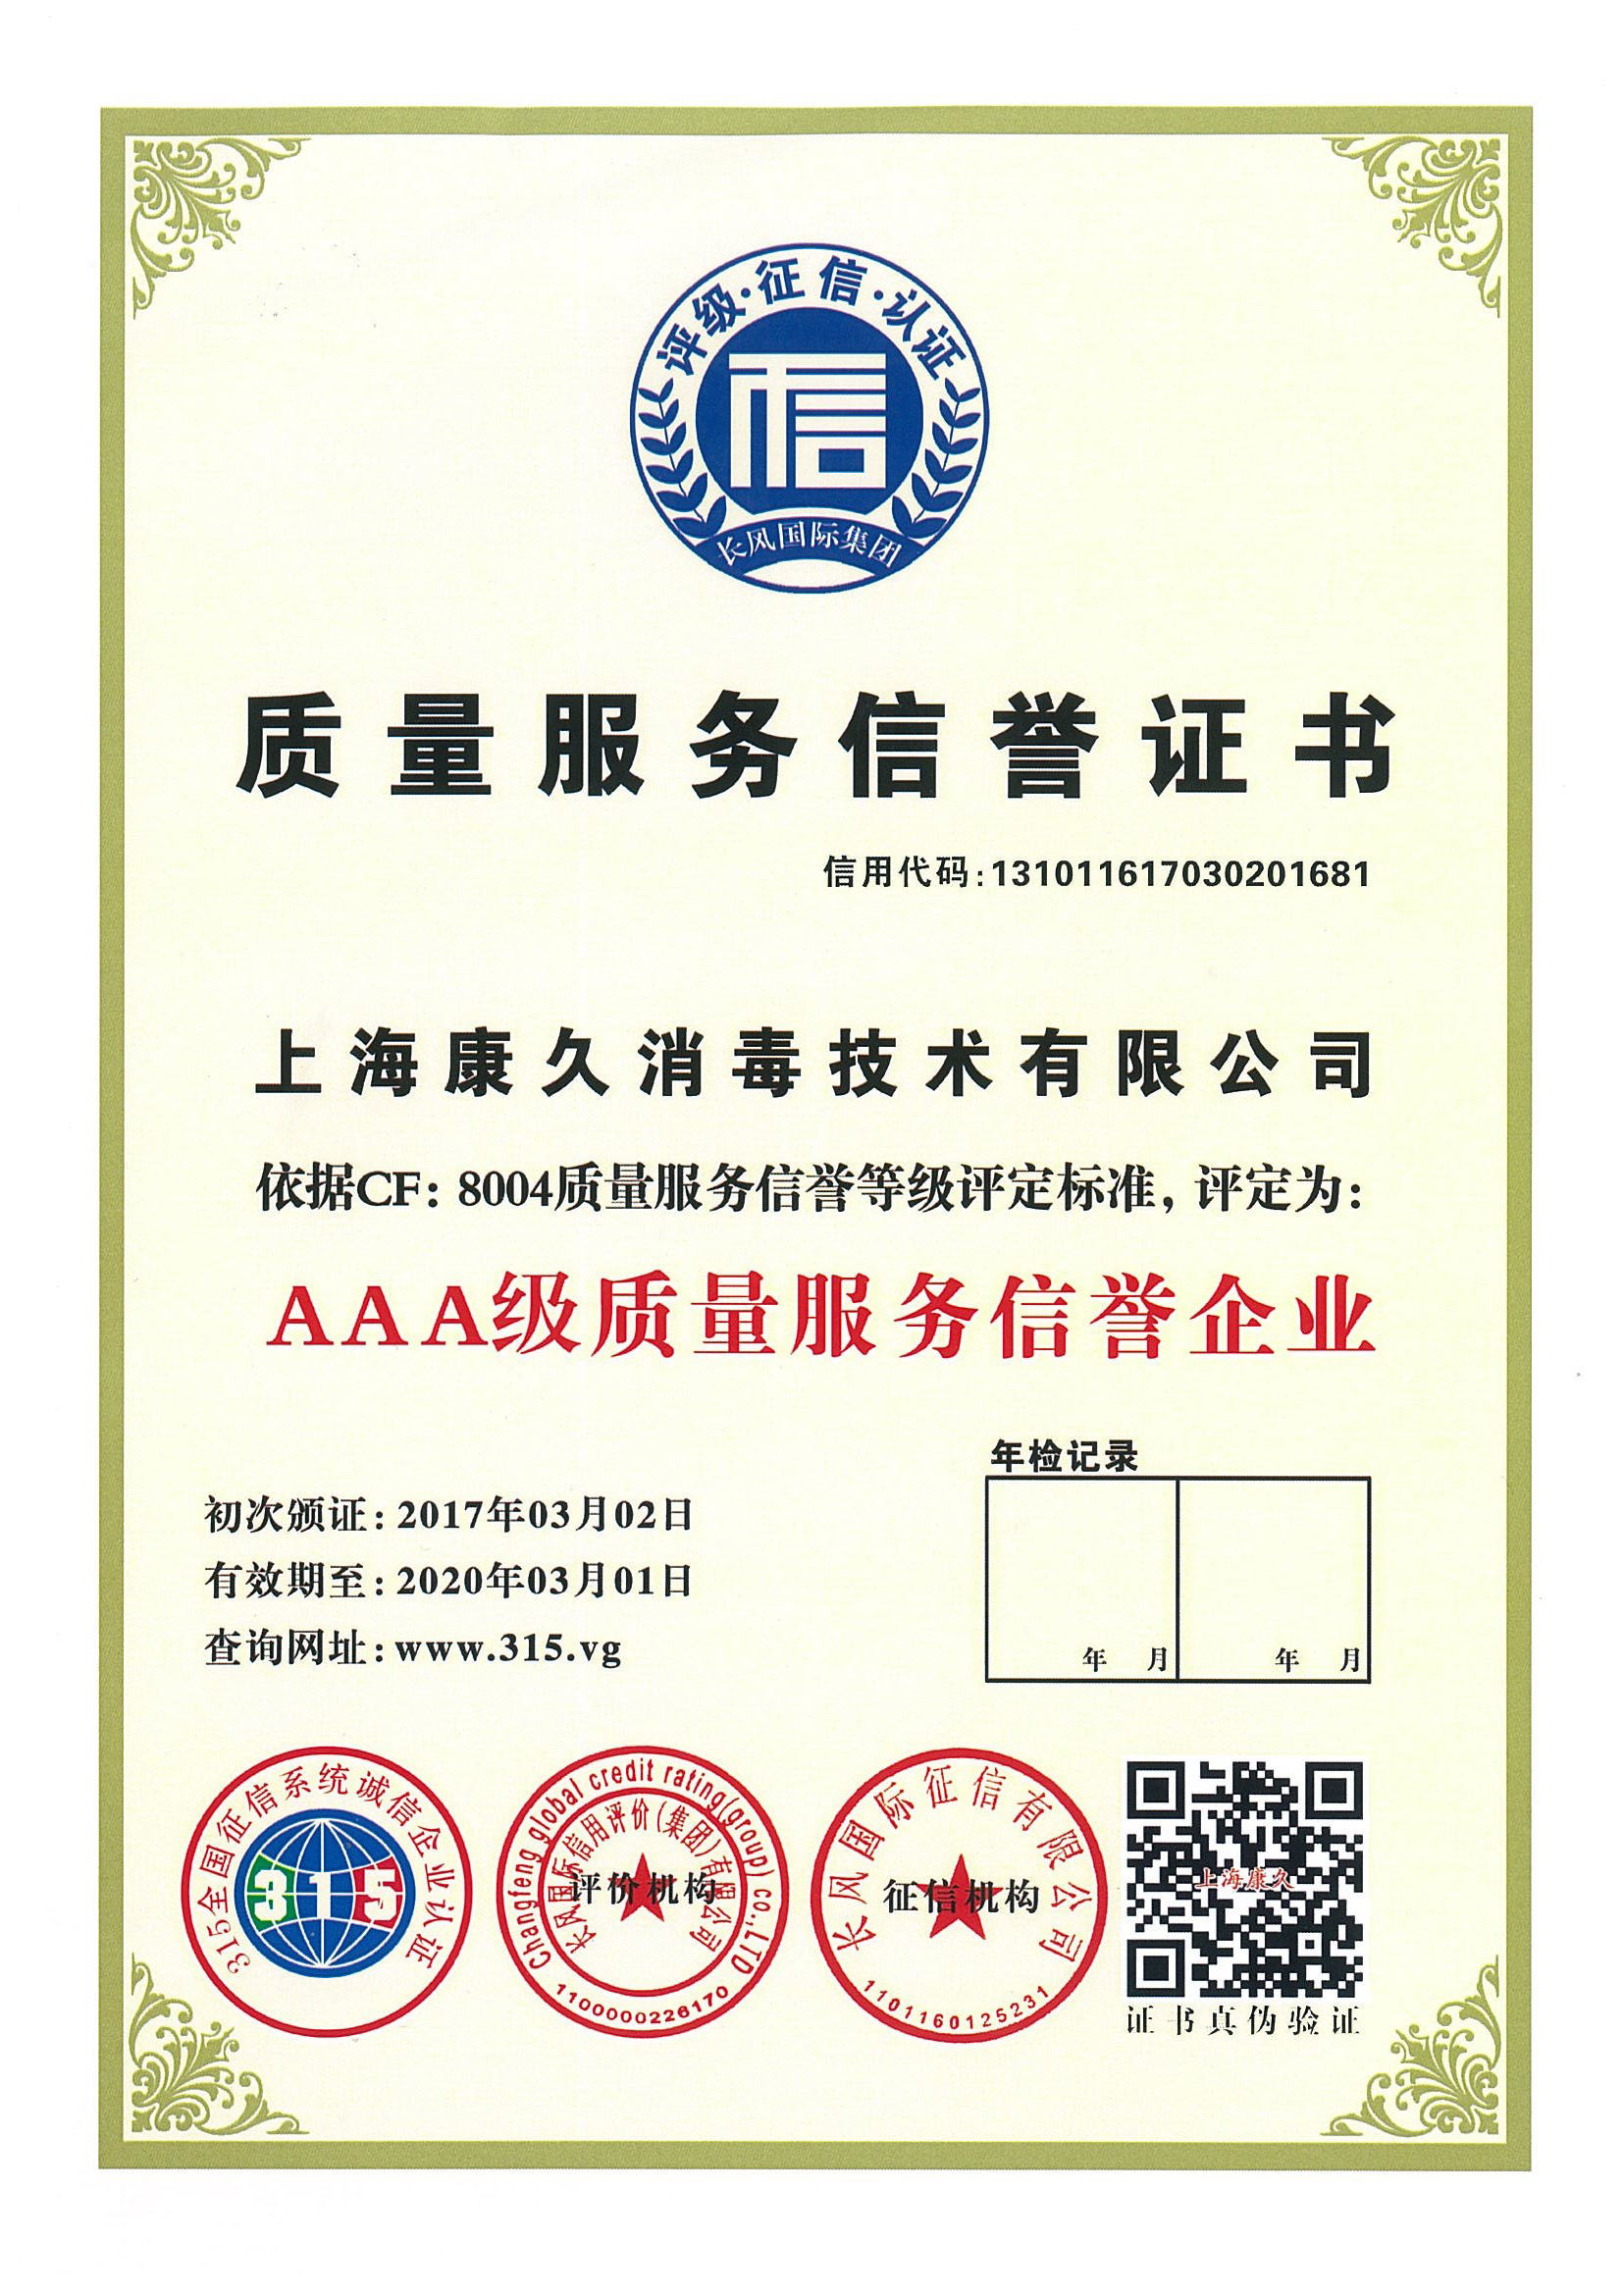 “忠县质量服务信誉证书